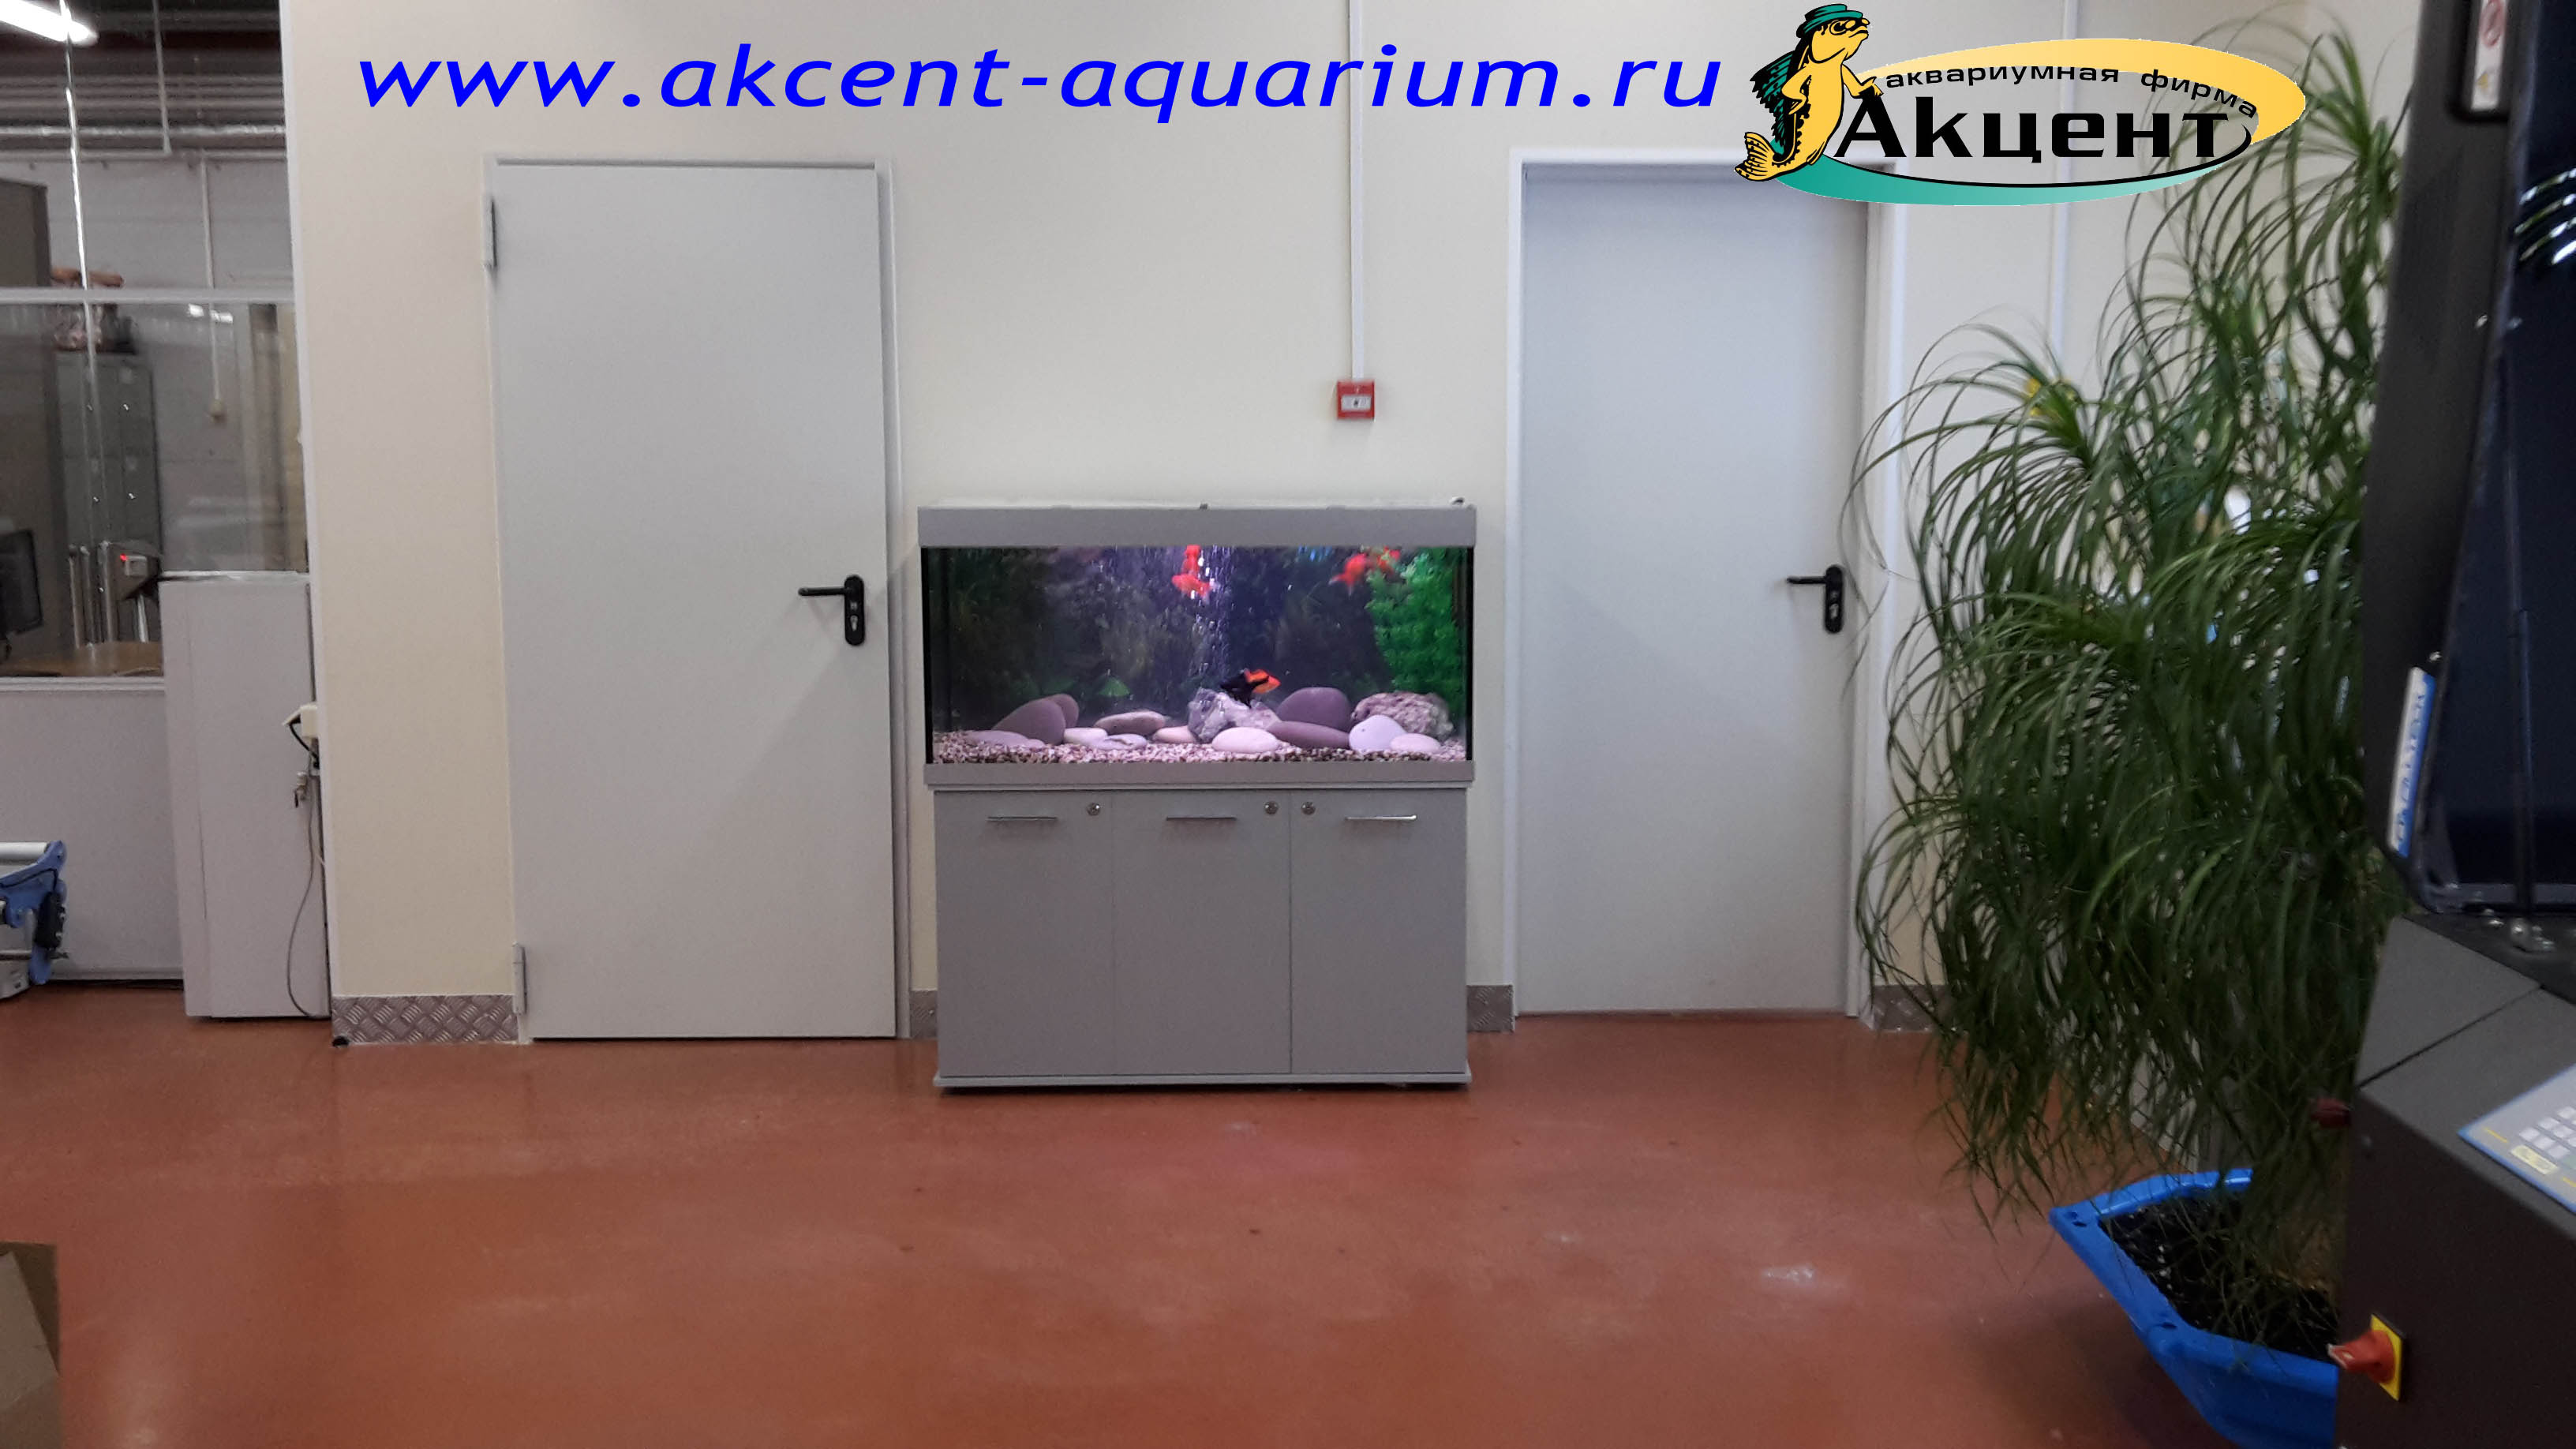 Акцент-аквариум, аквариум 250 литров прямоугольный, фабрика